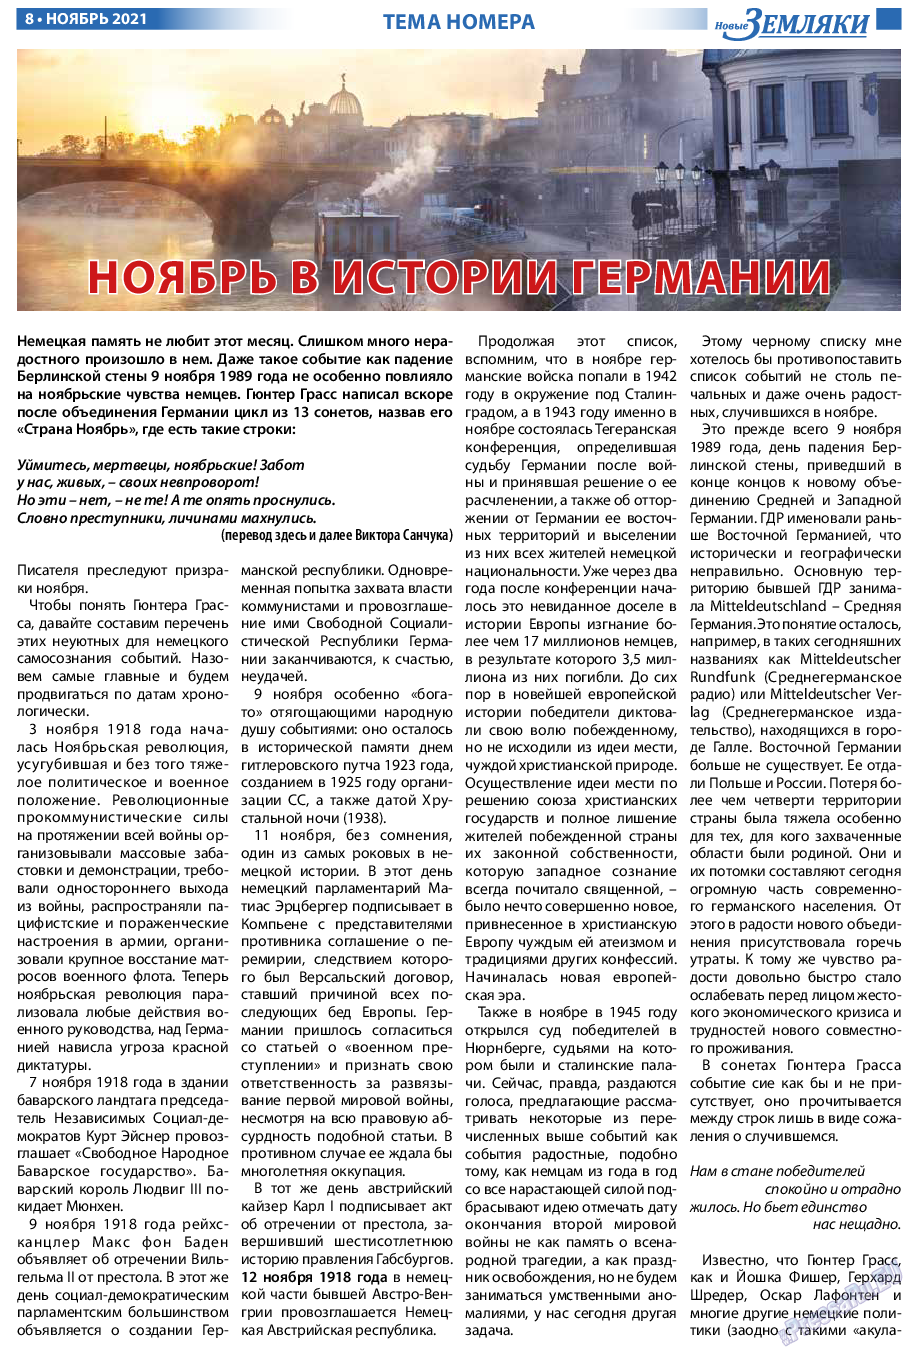 Новые Земляки, газета. 2021 №11 стр.8